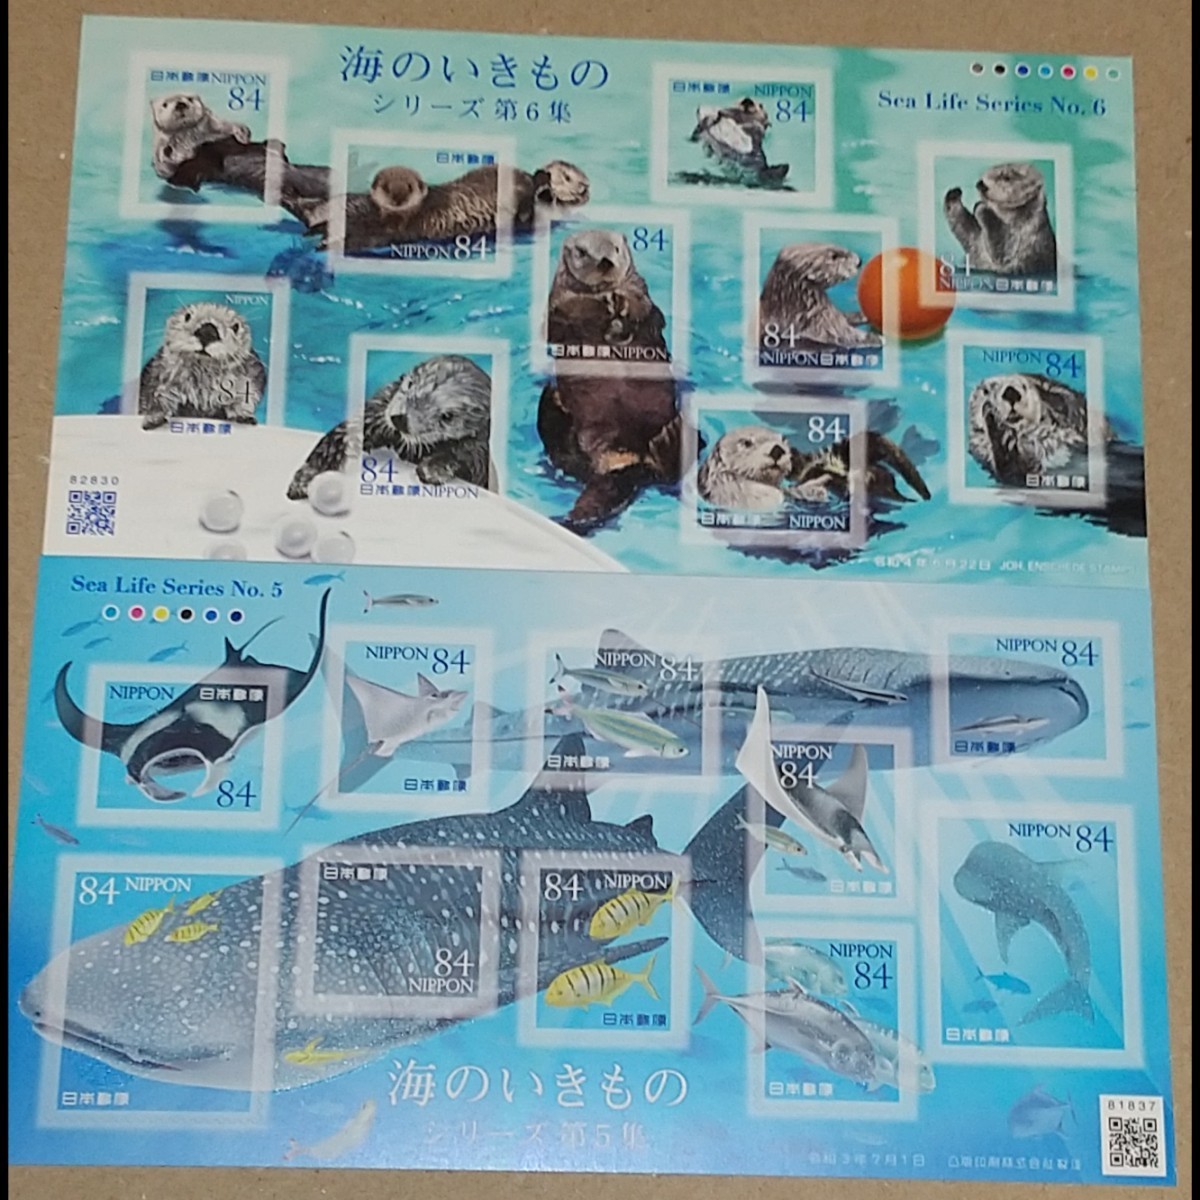 海のいきものシリーズ第5・6集 84円 シール切手セット 計 2シート 1680円分  記念切手